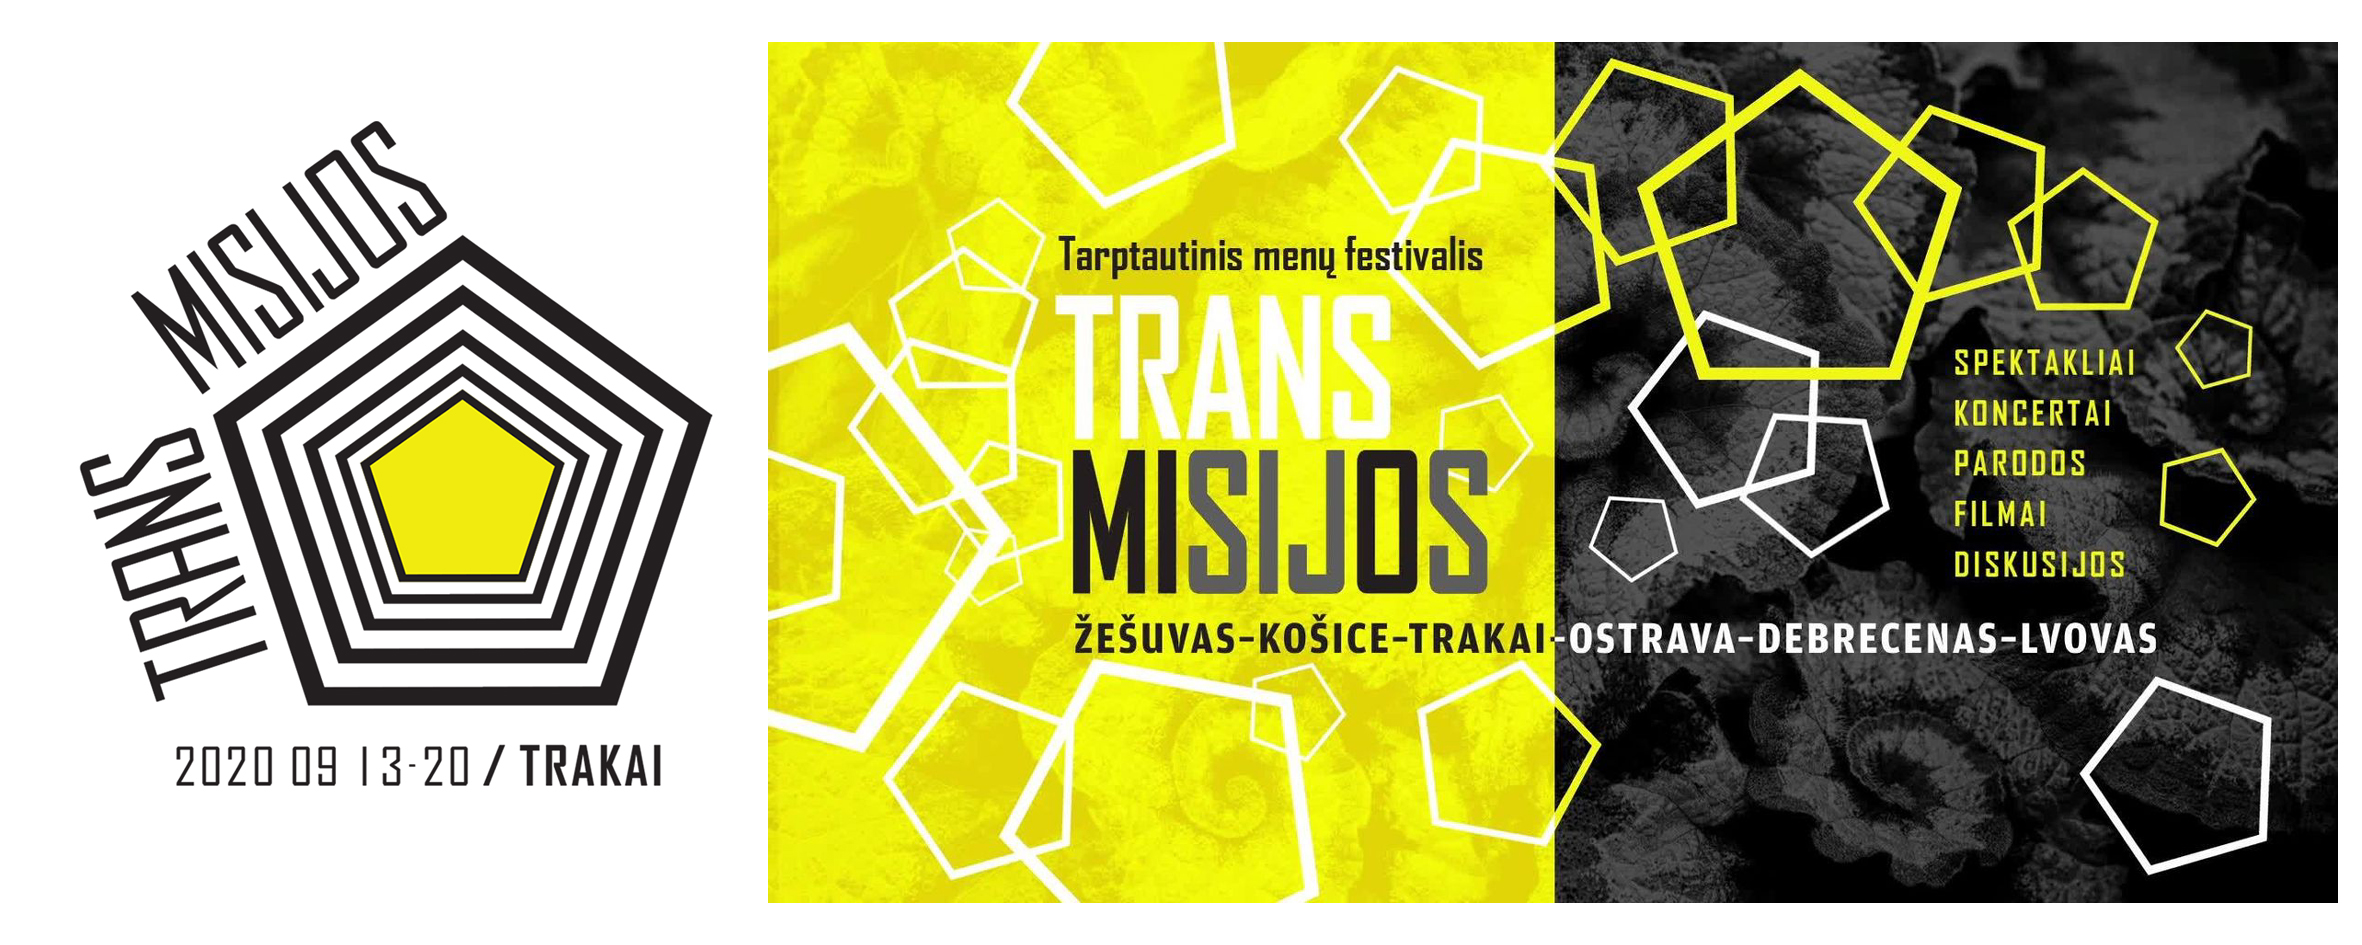 HISTORYCZNA STOLICA LITWY – TROKI  GOSPODARZEM TEGOROCZNEJ EDYCJI FESTIWALU  TRANS/MISIJOS 2020. Polski Program.